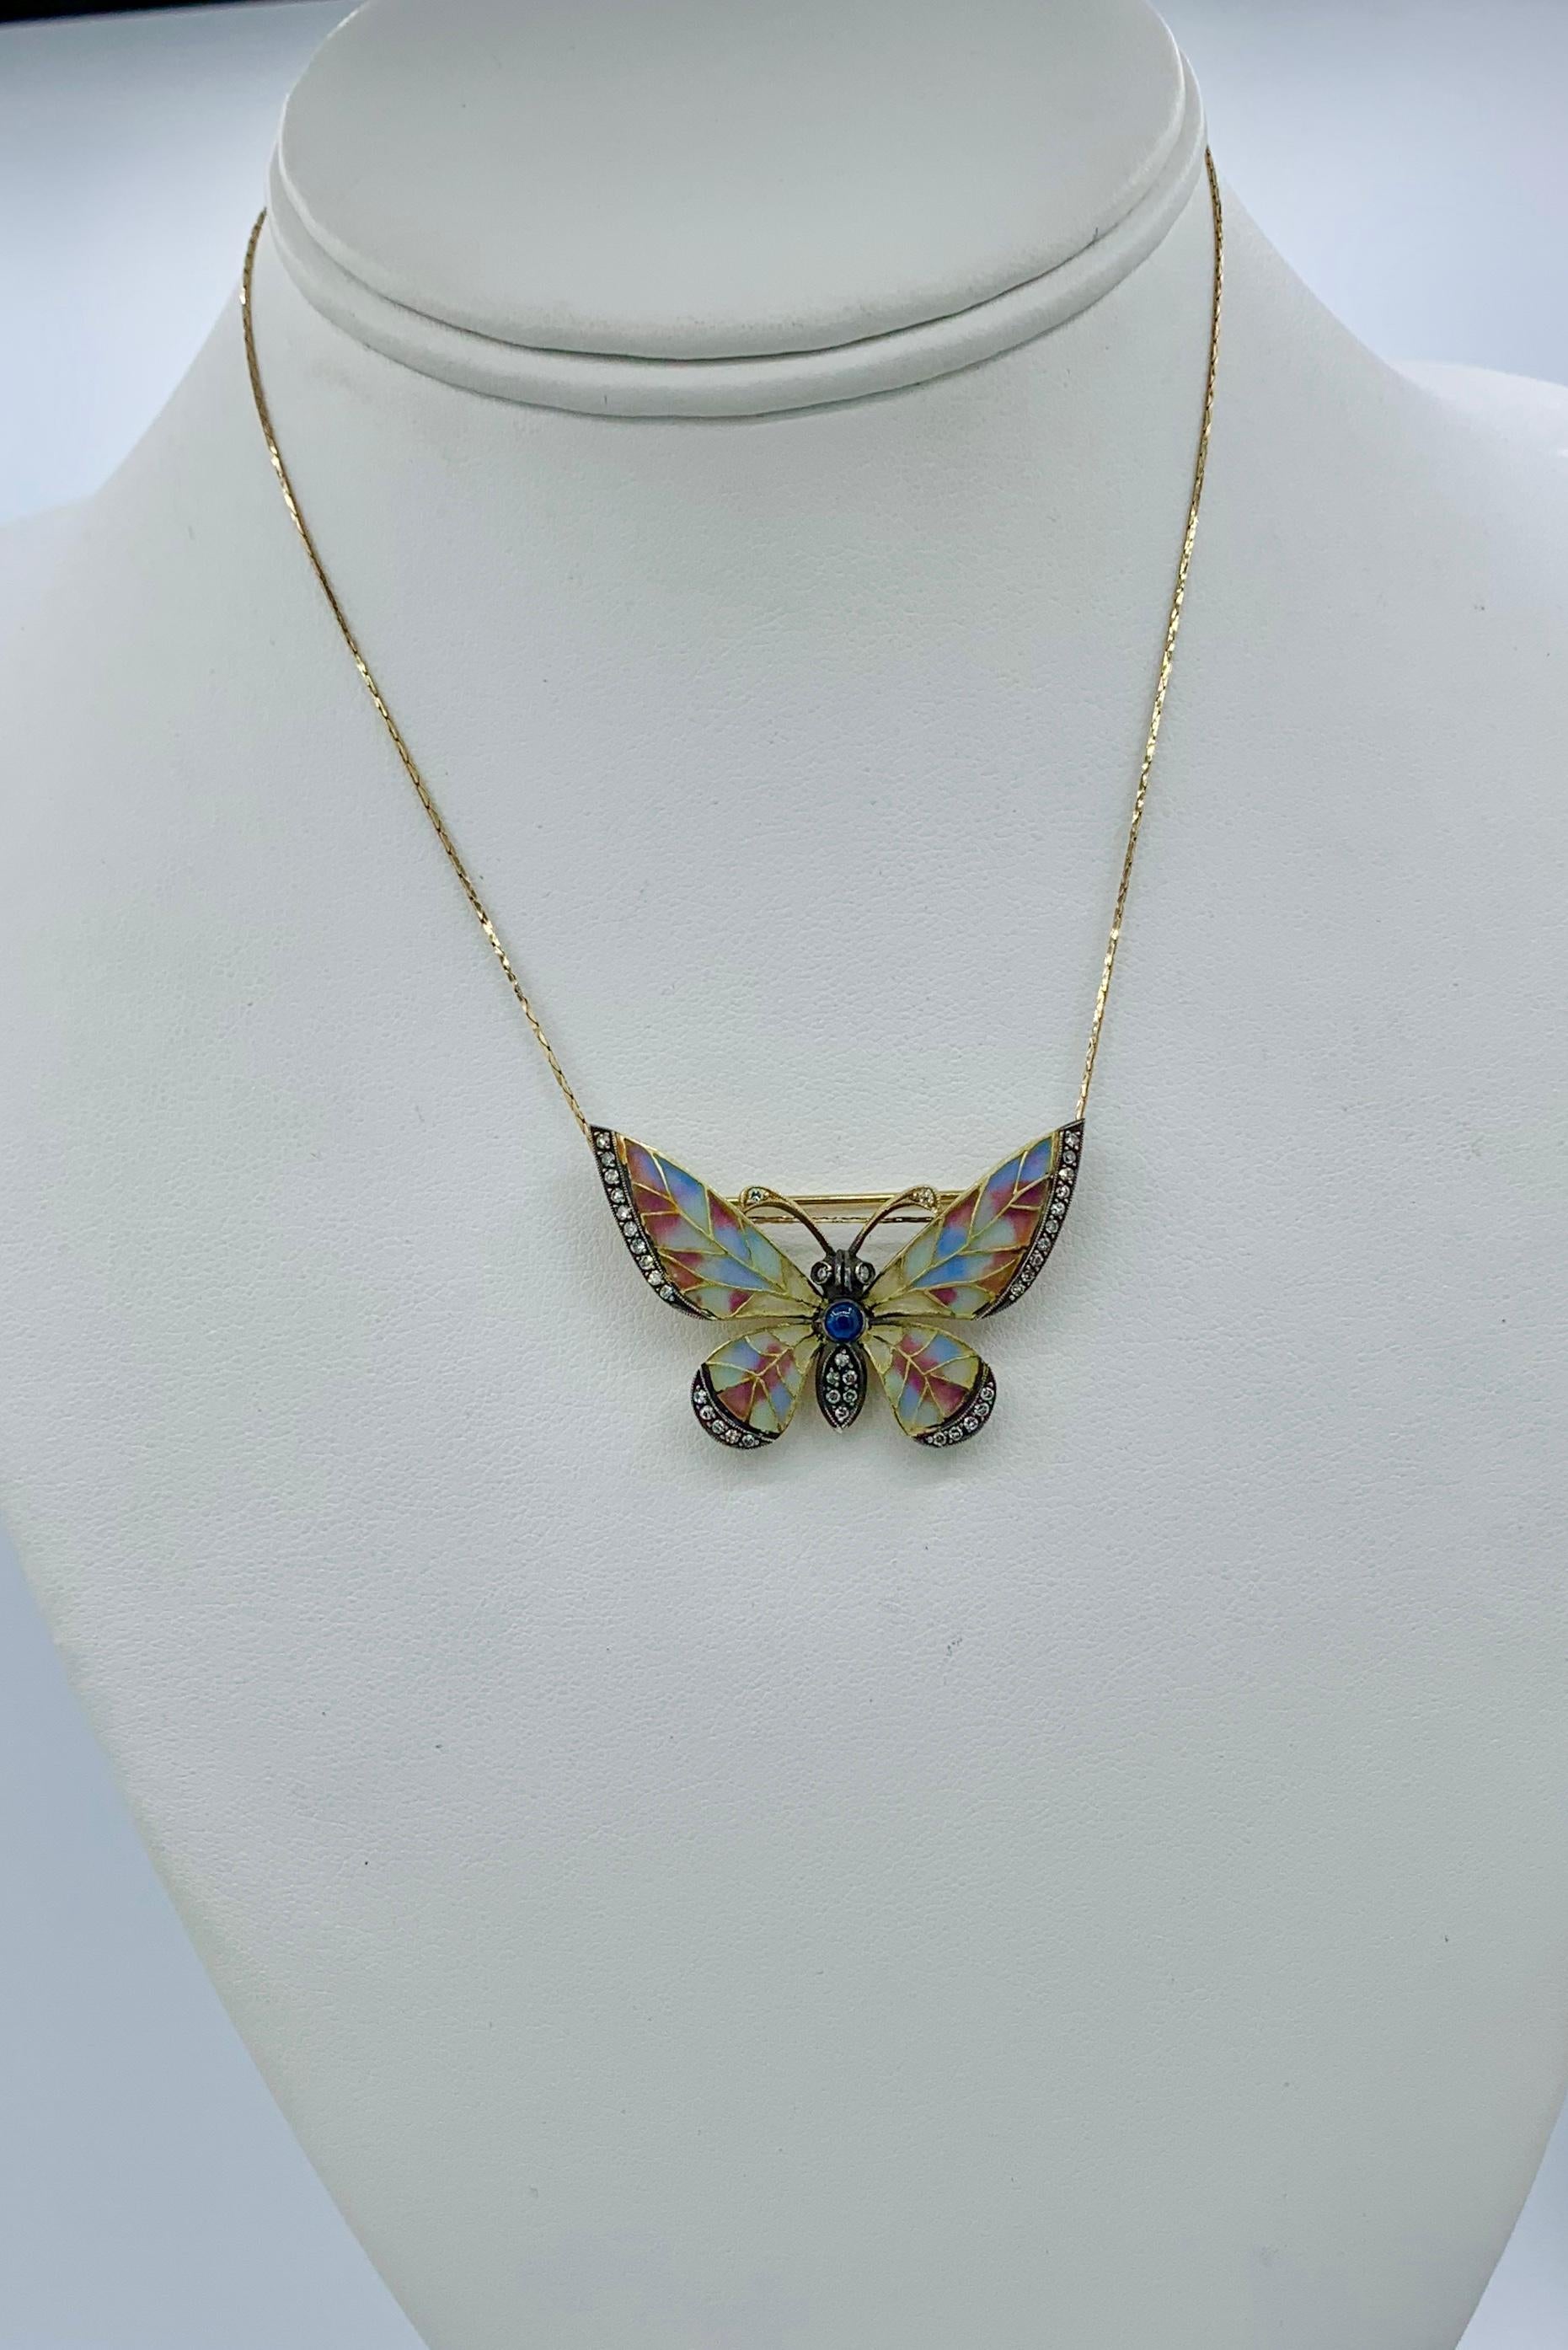 Il s'agit d'une magnifique et rare broche Art nouveau de qualité muséale en forme de papillon ou de papillon de nuit.  Le magnifique papillon a des ailes en émail Plique-a-jour, un corps en saphir bleu et est serti de diamants le long des ailes, du